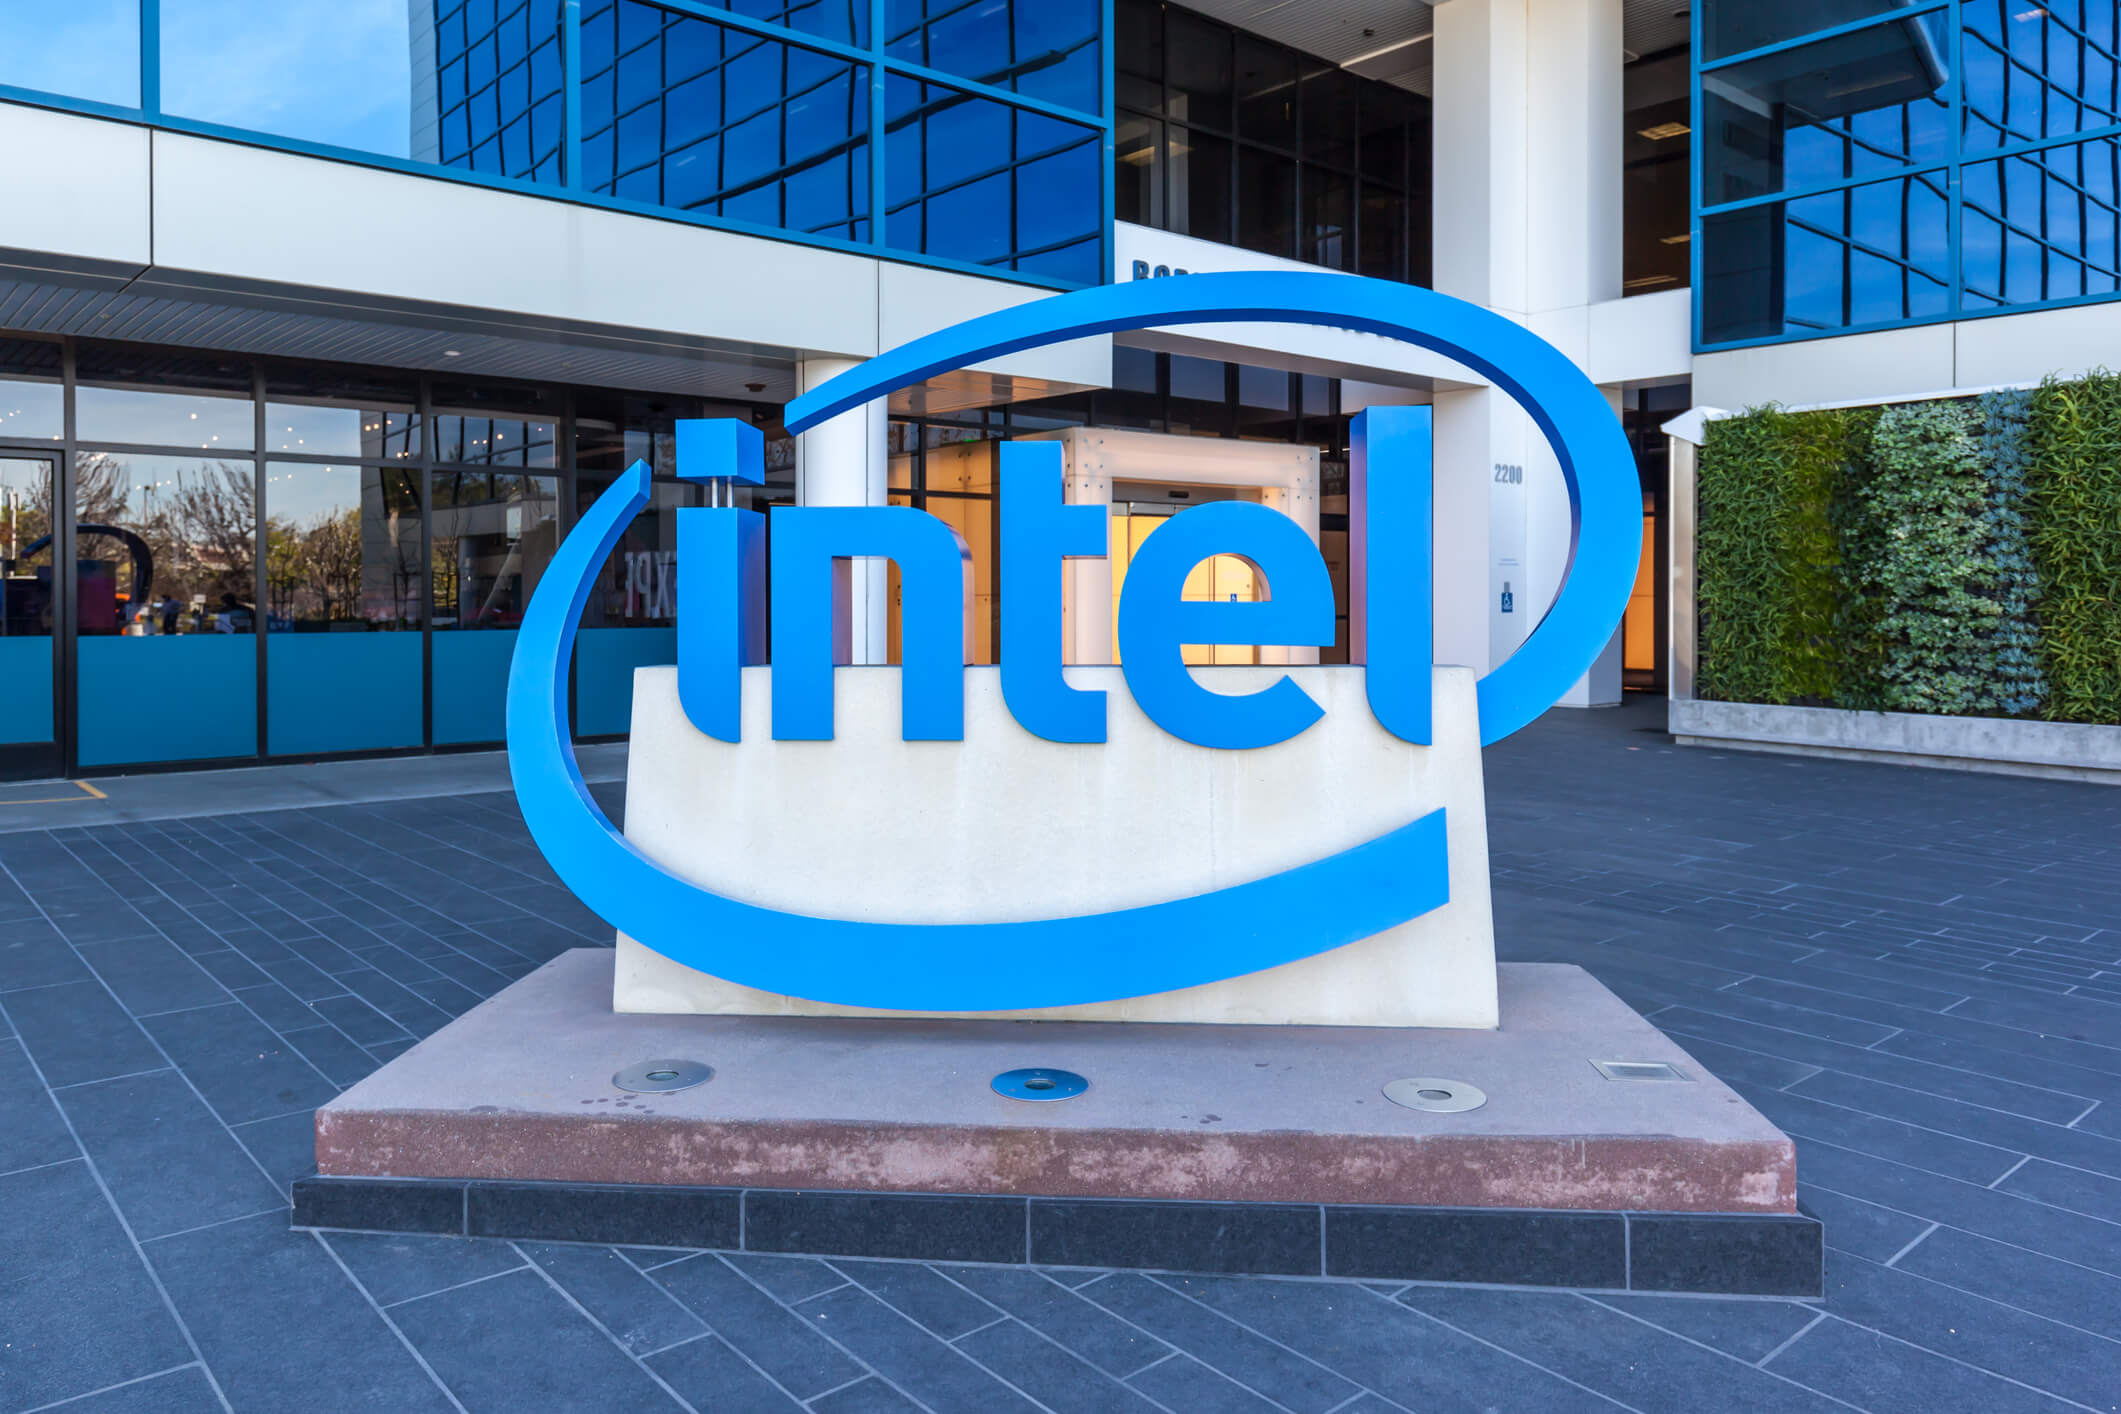 Tudo o que você precisa saber sobre o Intel Unite